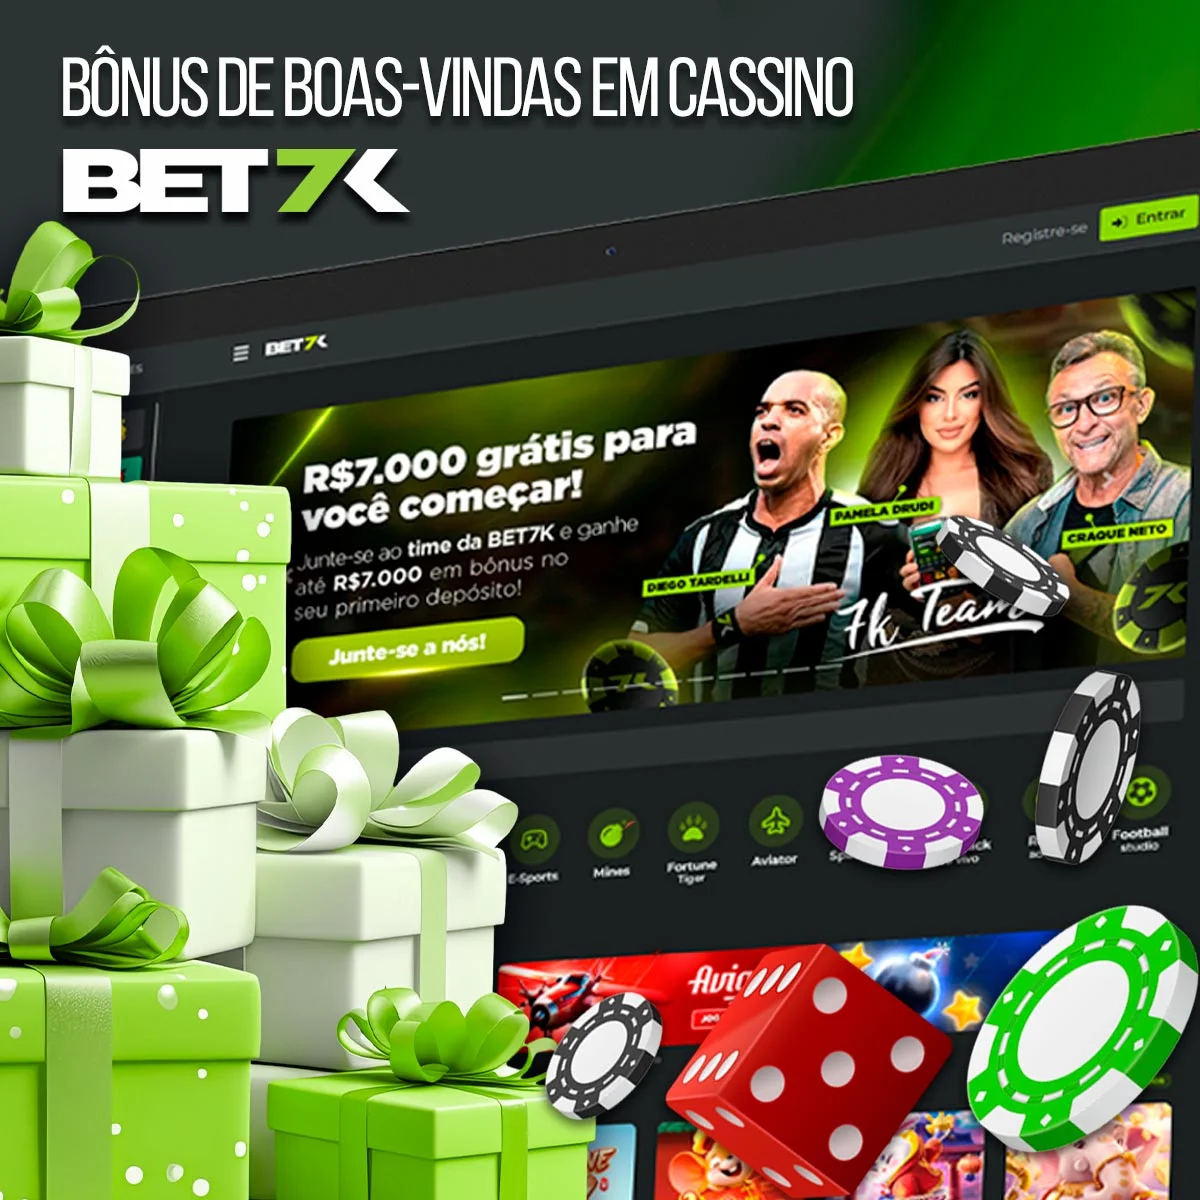 Visão geral do bônus de cassino da casa de apostas Bet7k no Brasil